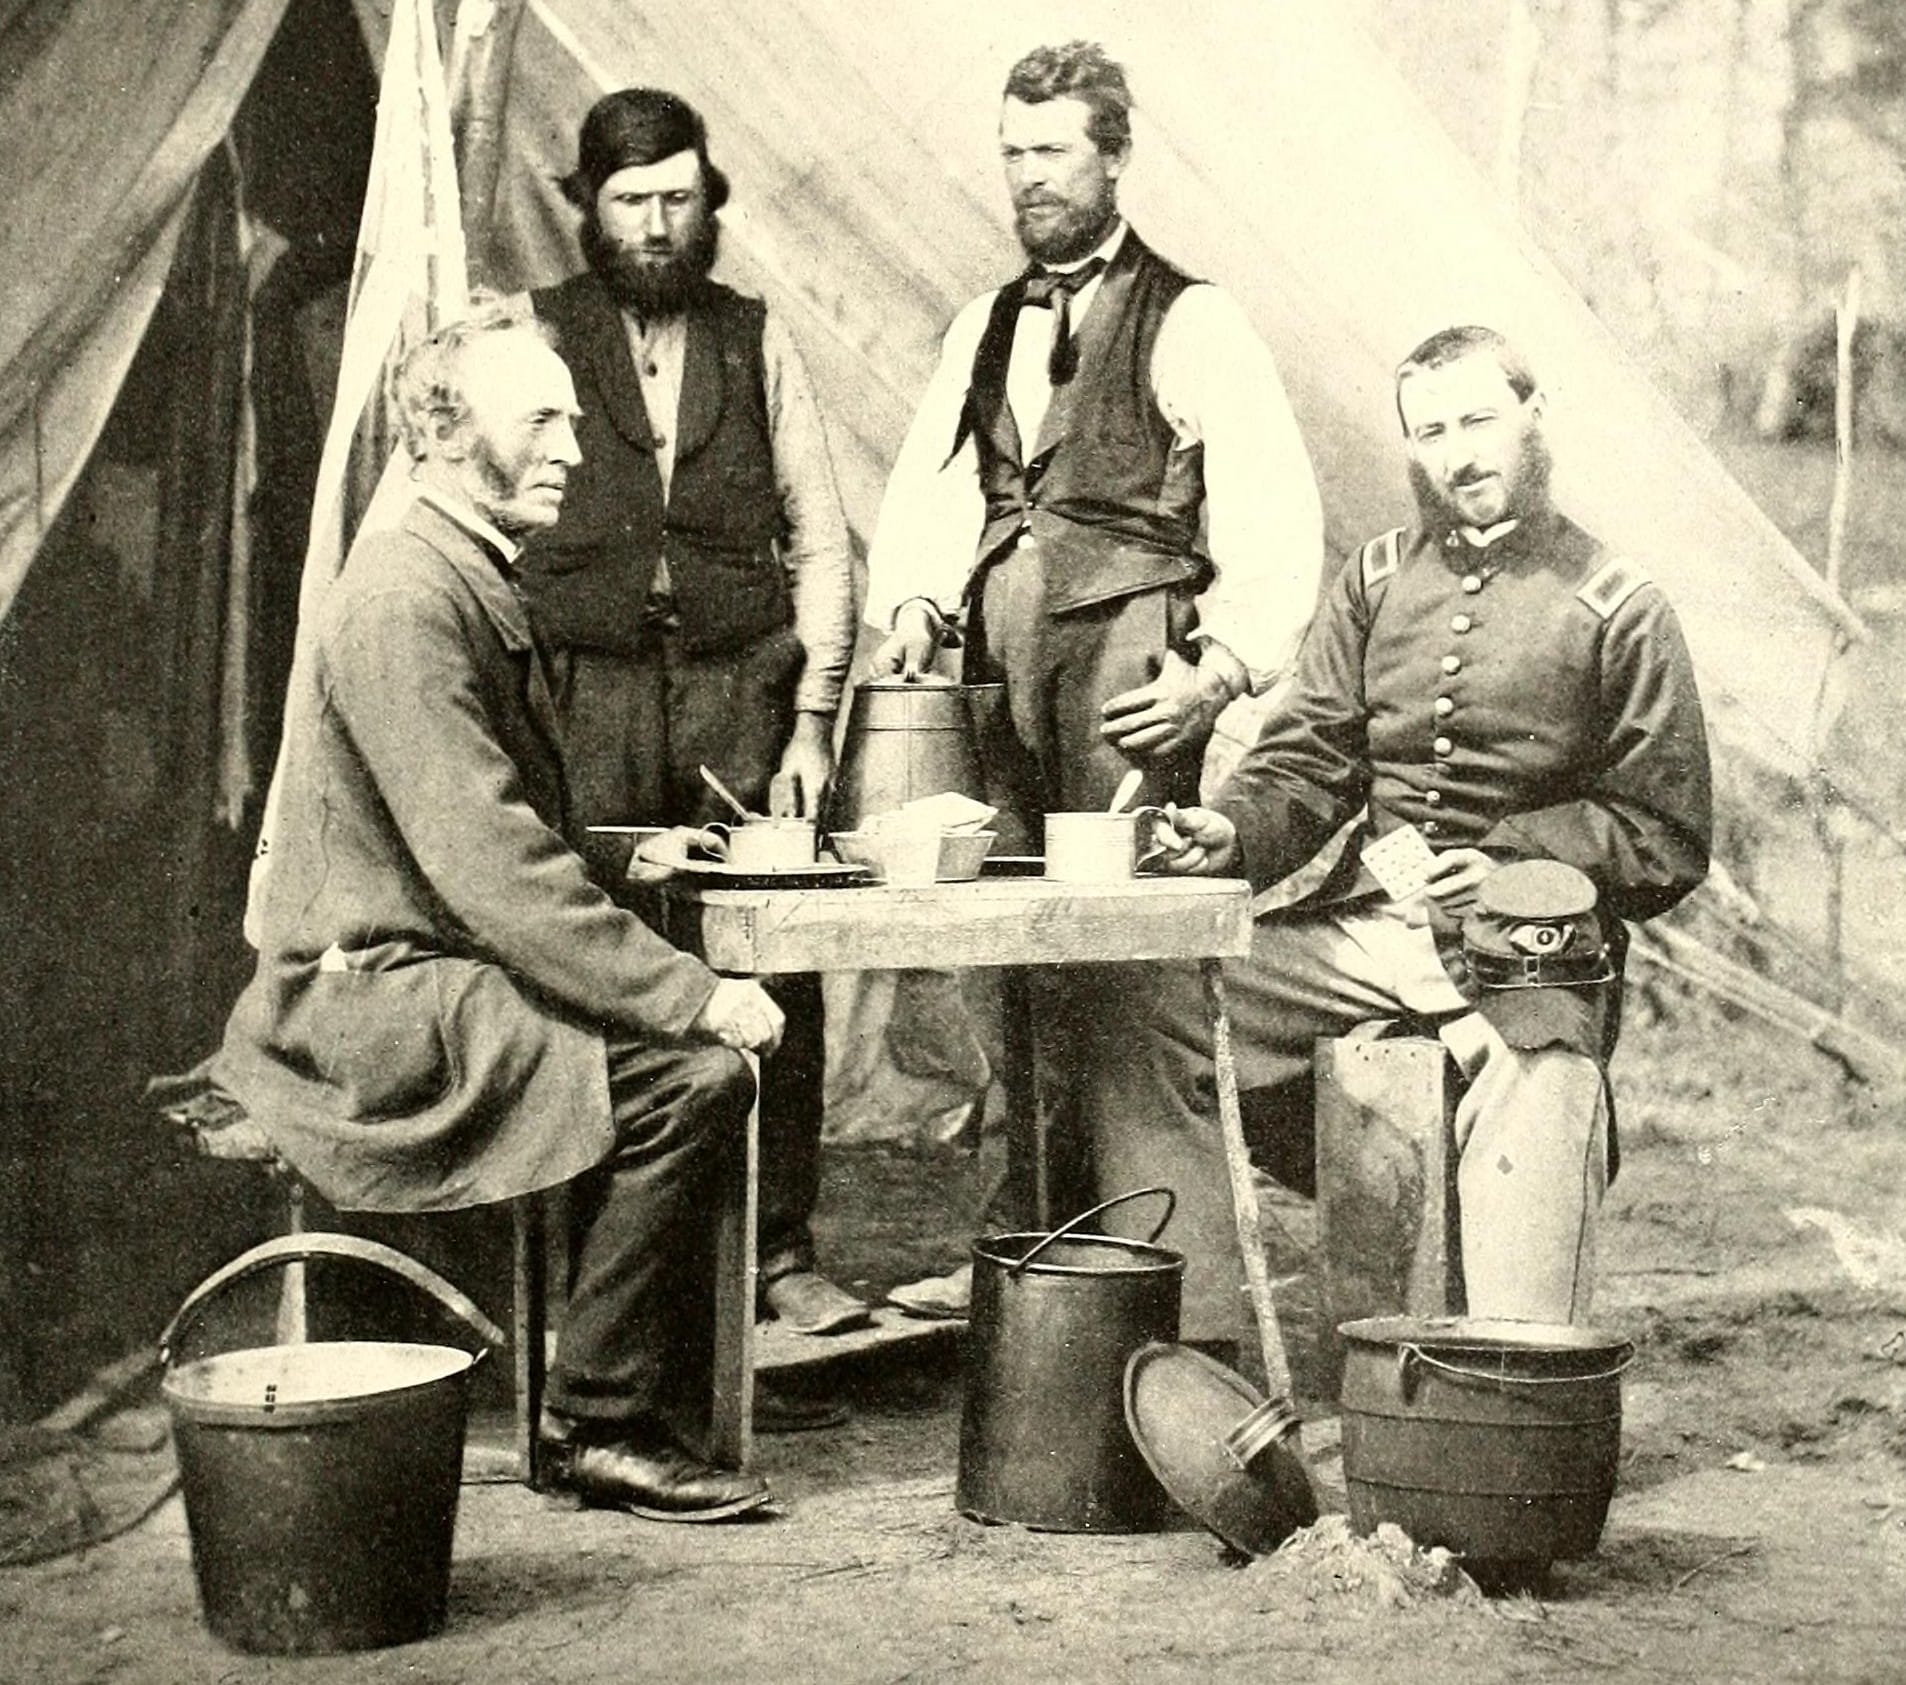 Civil War soldier eating hardtack